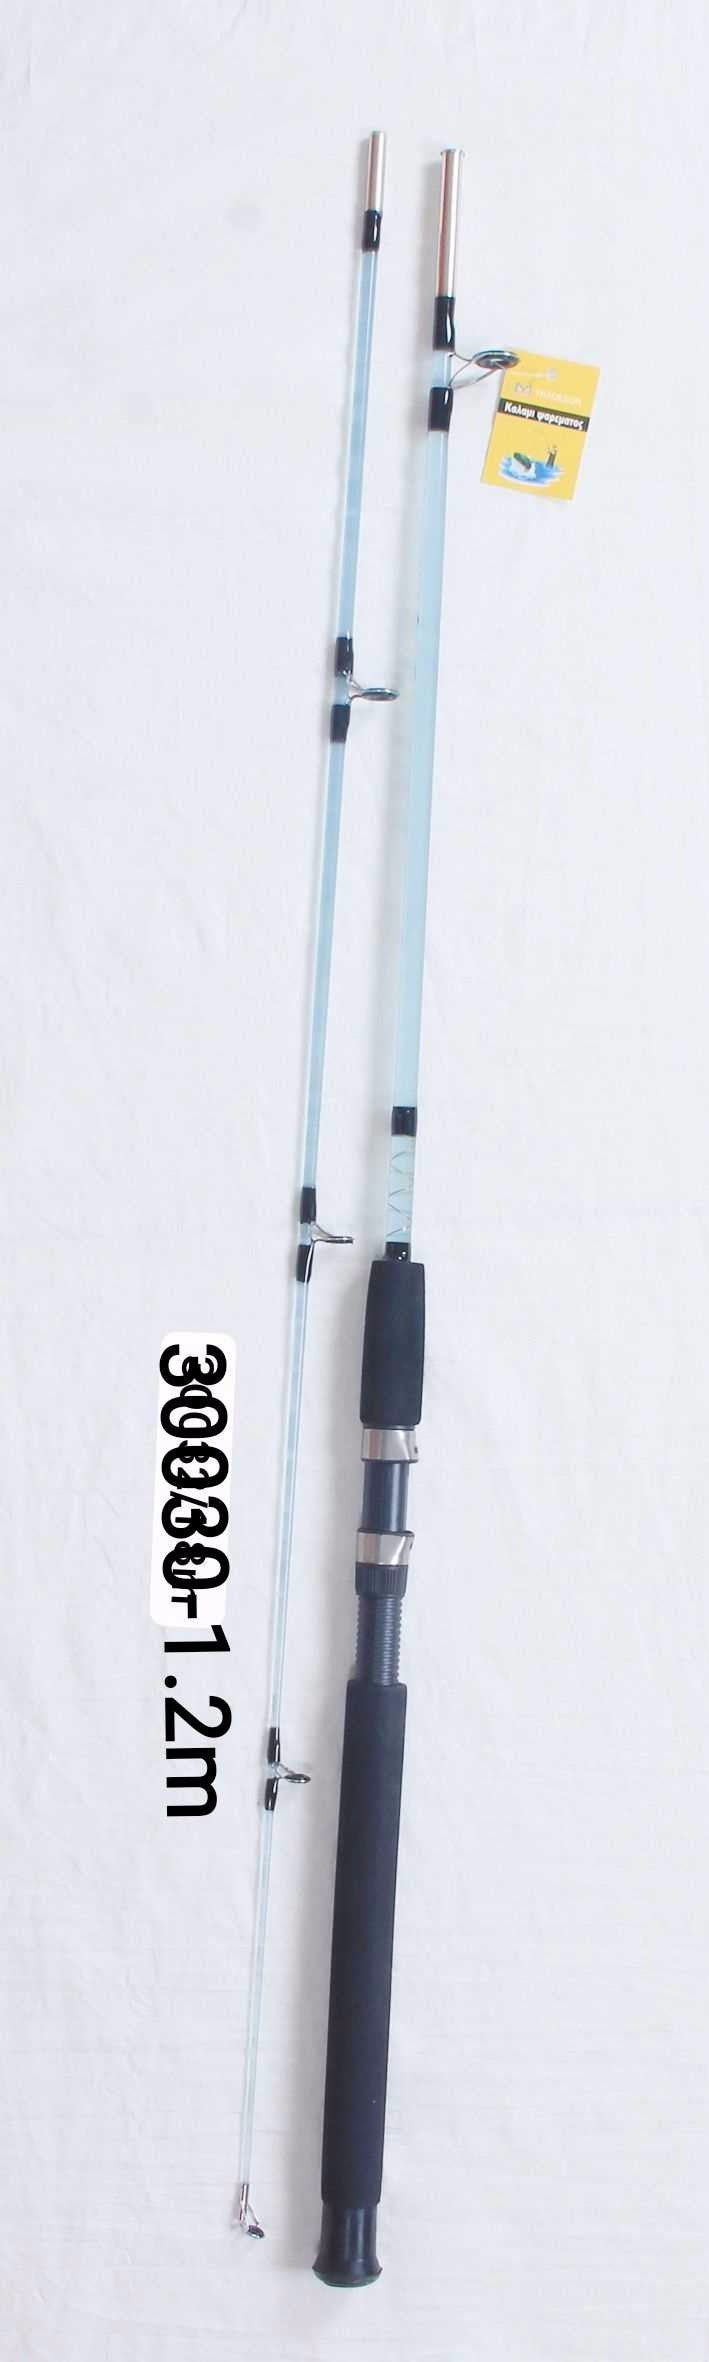 Fishing rod - 1.2m - 30030 